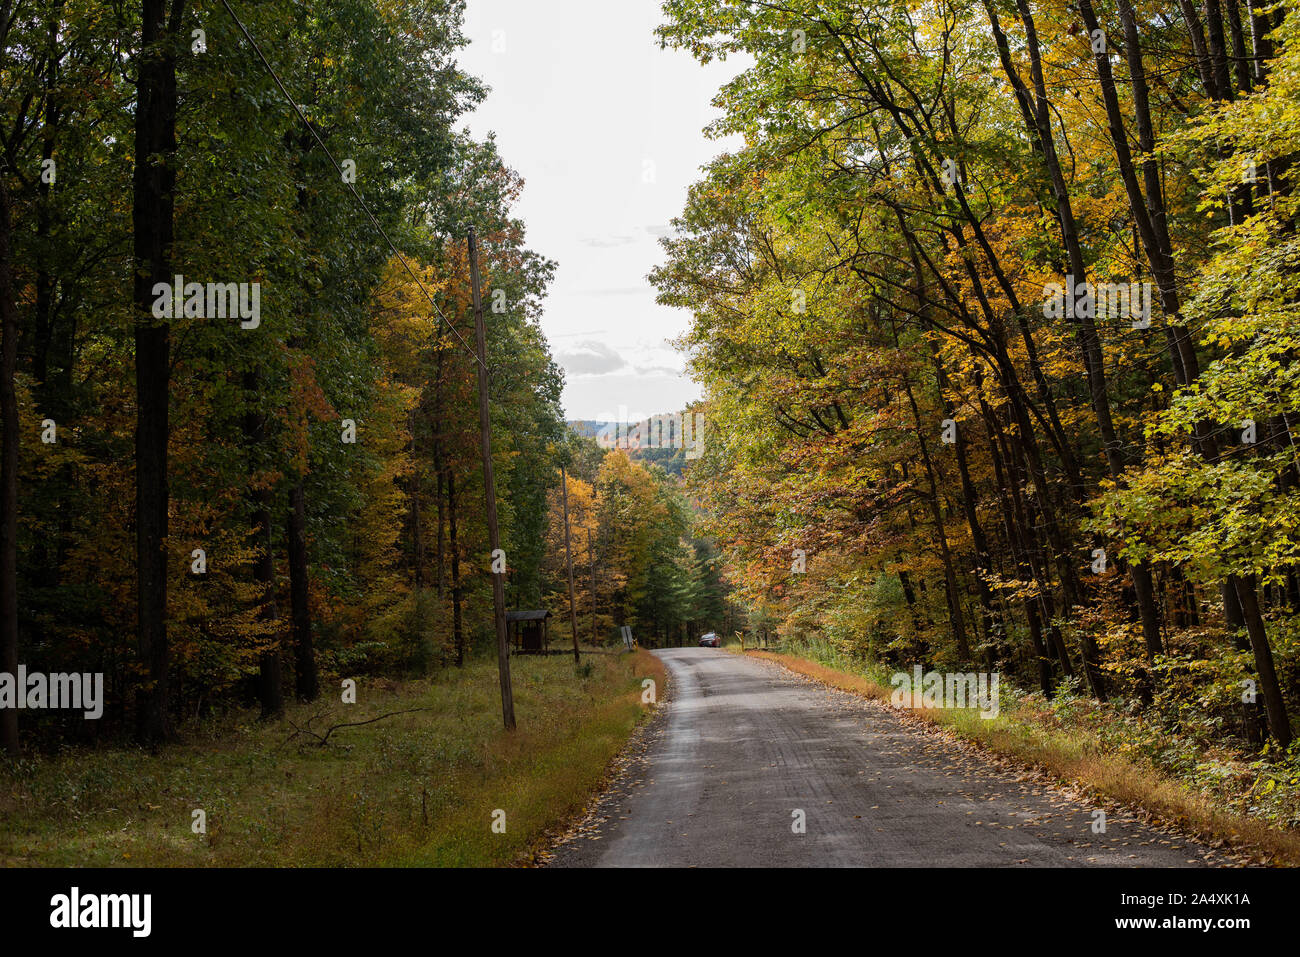 Un camino de tierra serpentea a través de los árboles durante la autumnl Foto de stock